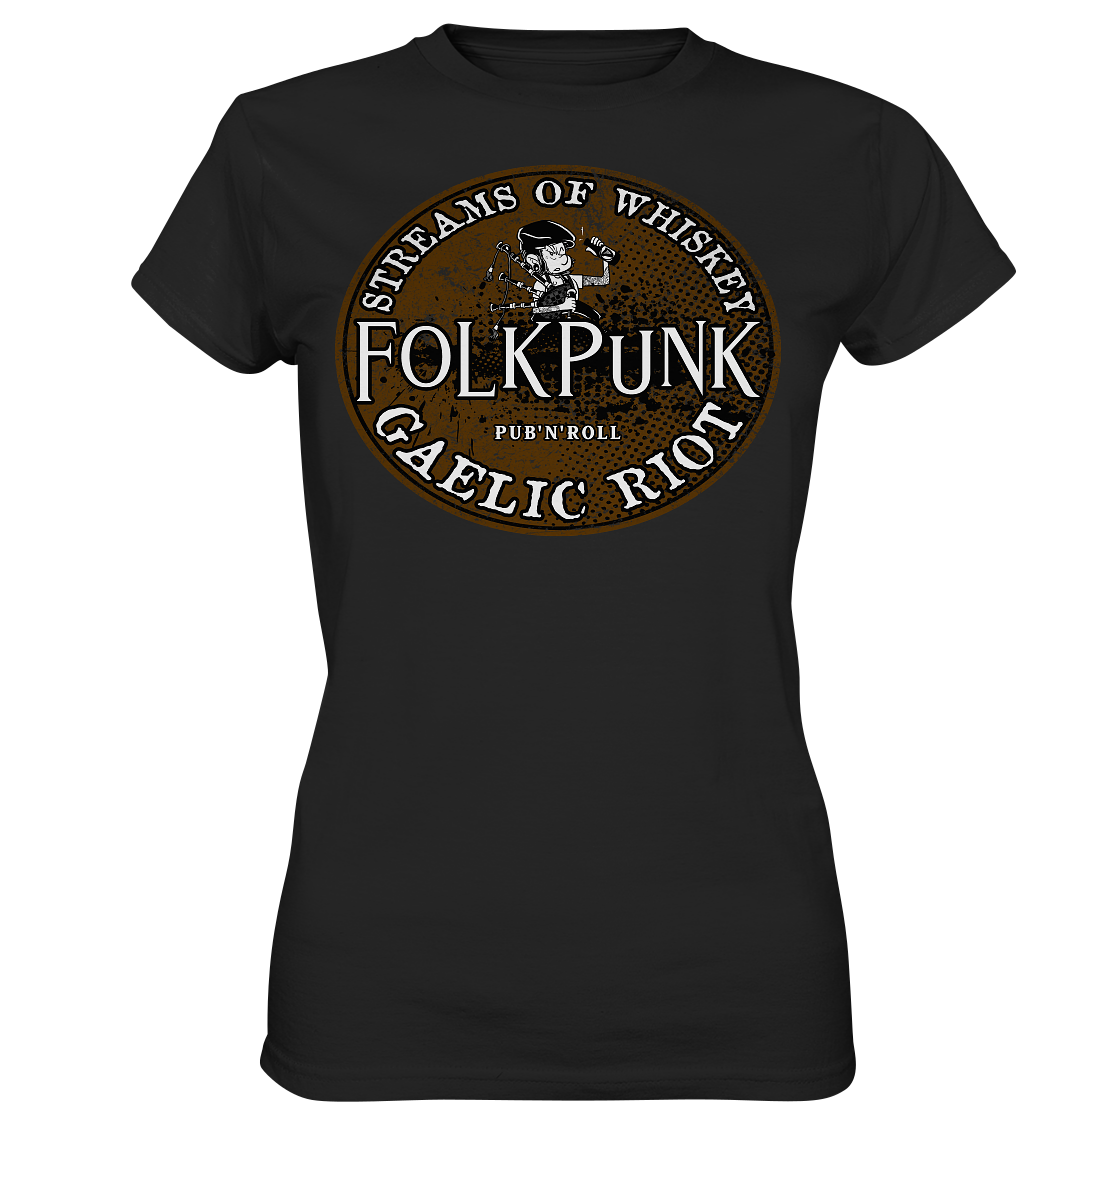 Folkpunk "Streams Of Whiskey" - Ladies Premium Shirt